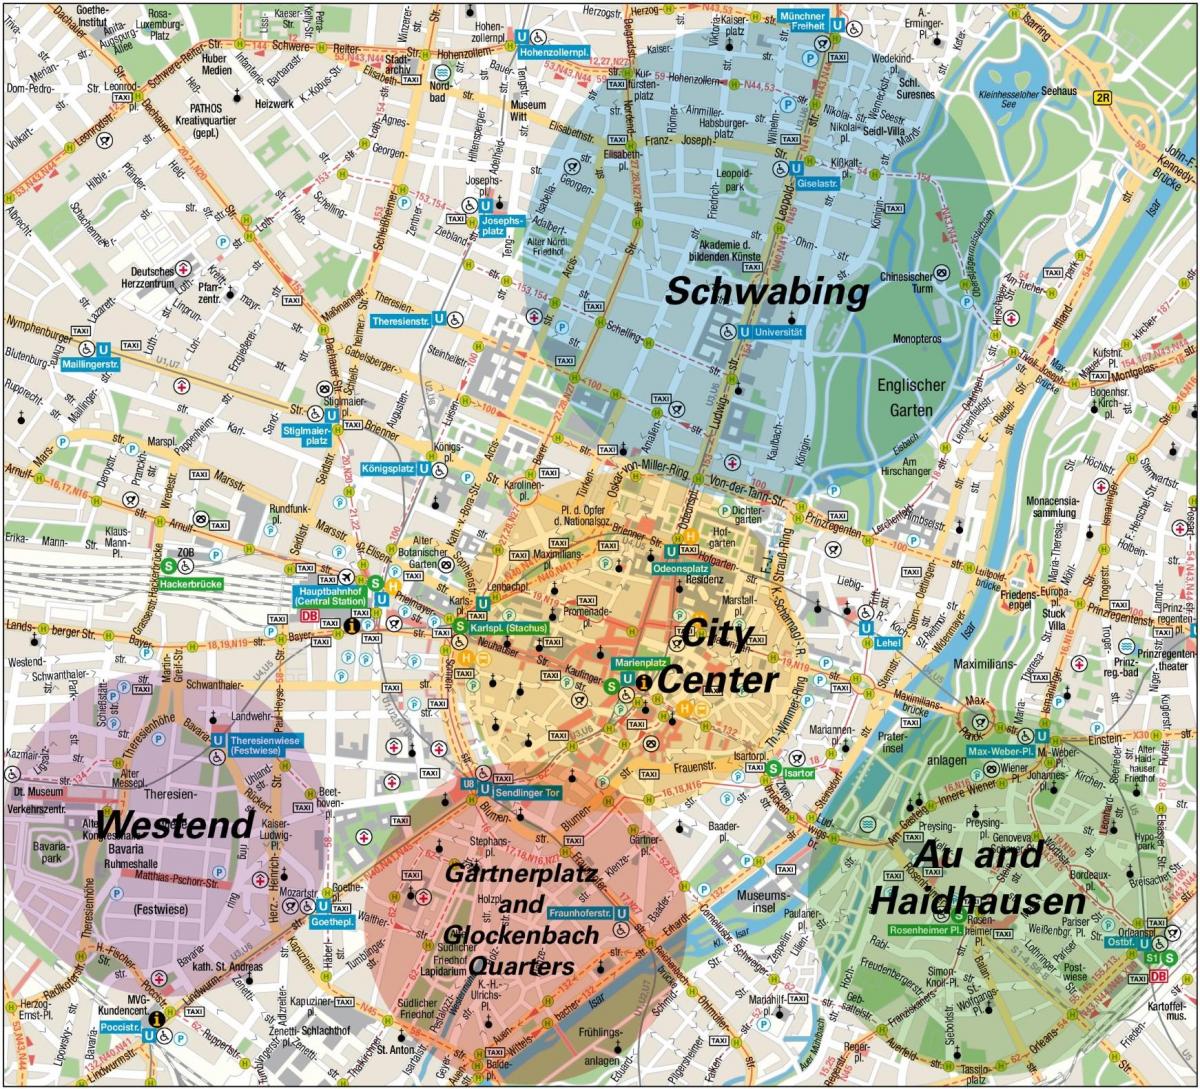 Plan des quartiers de Munich